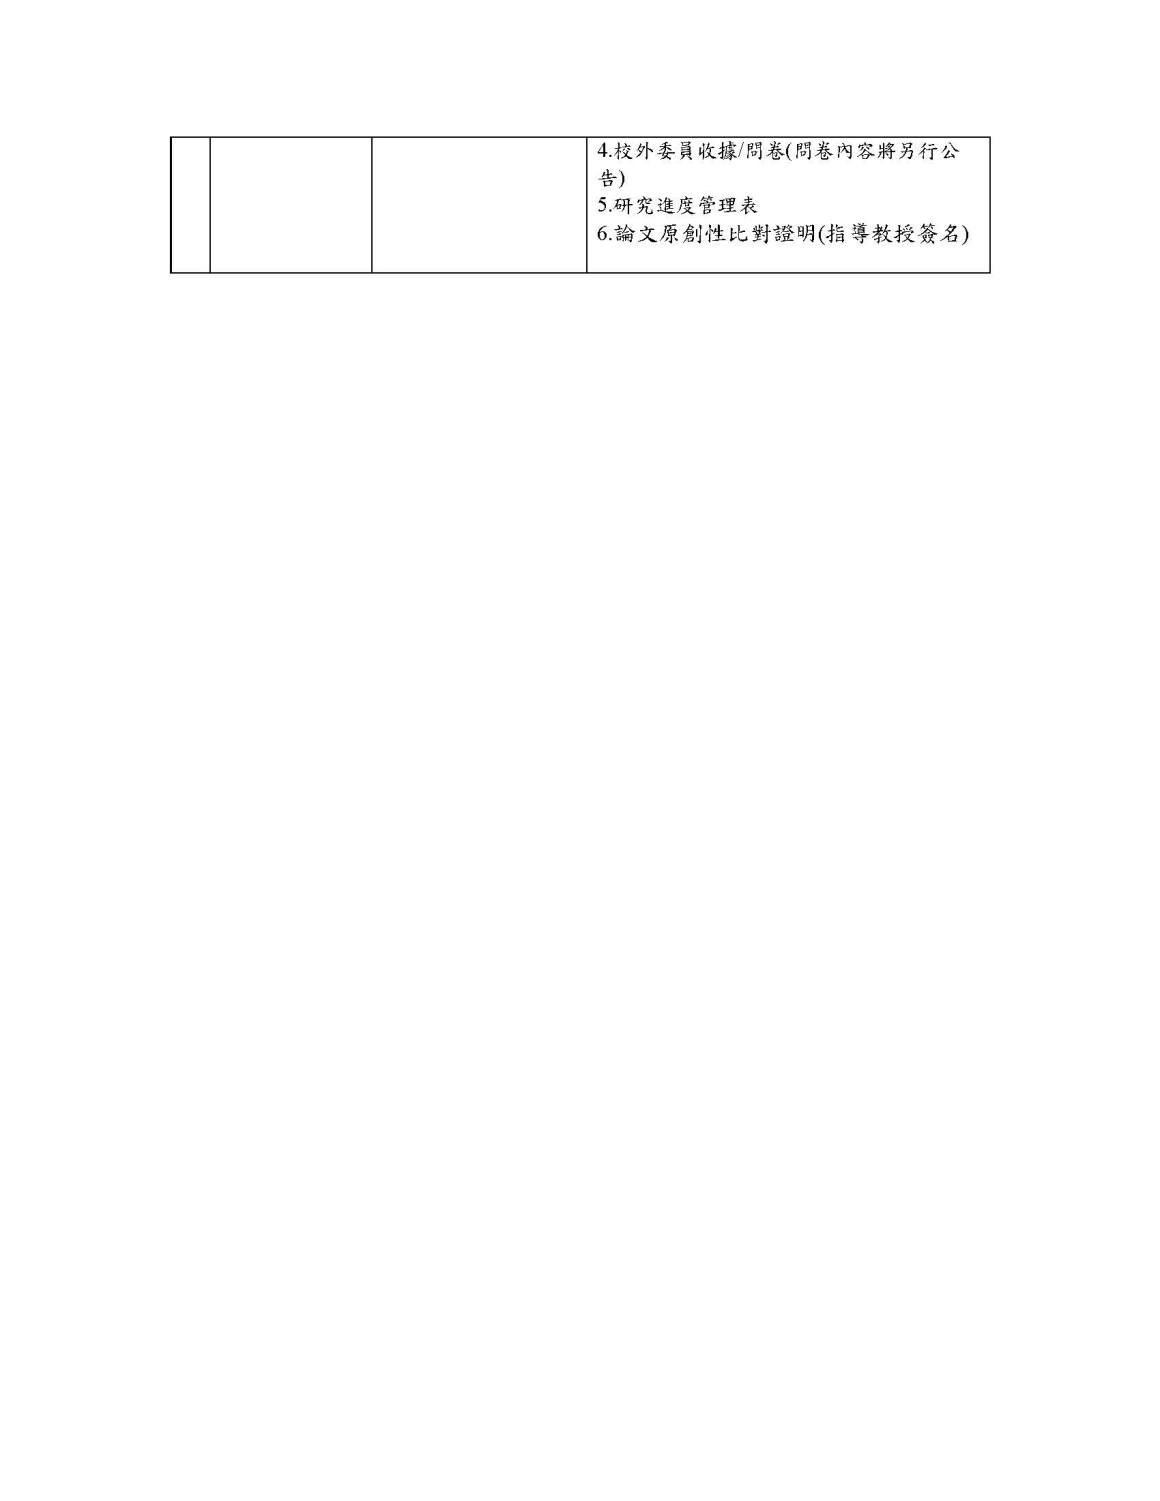 附件一-智數所學位考試申請作業時間表(學生版)_0415_頁面_2